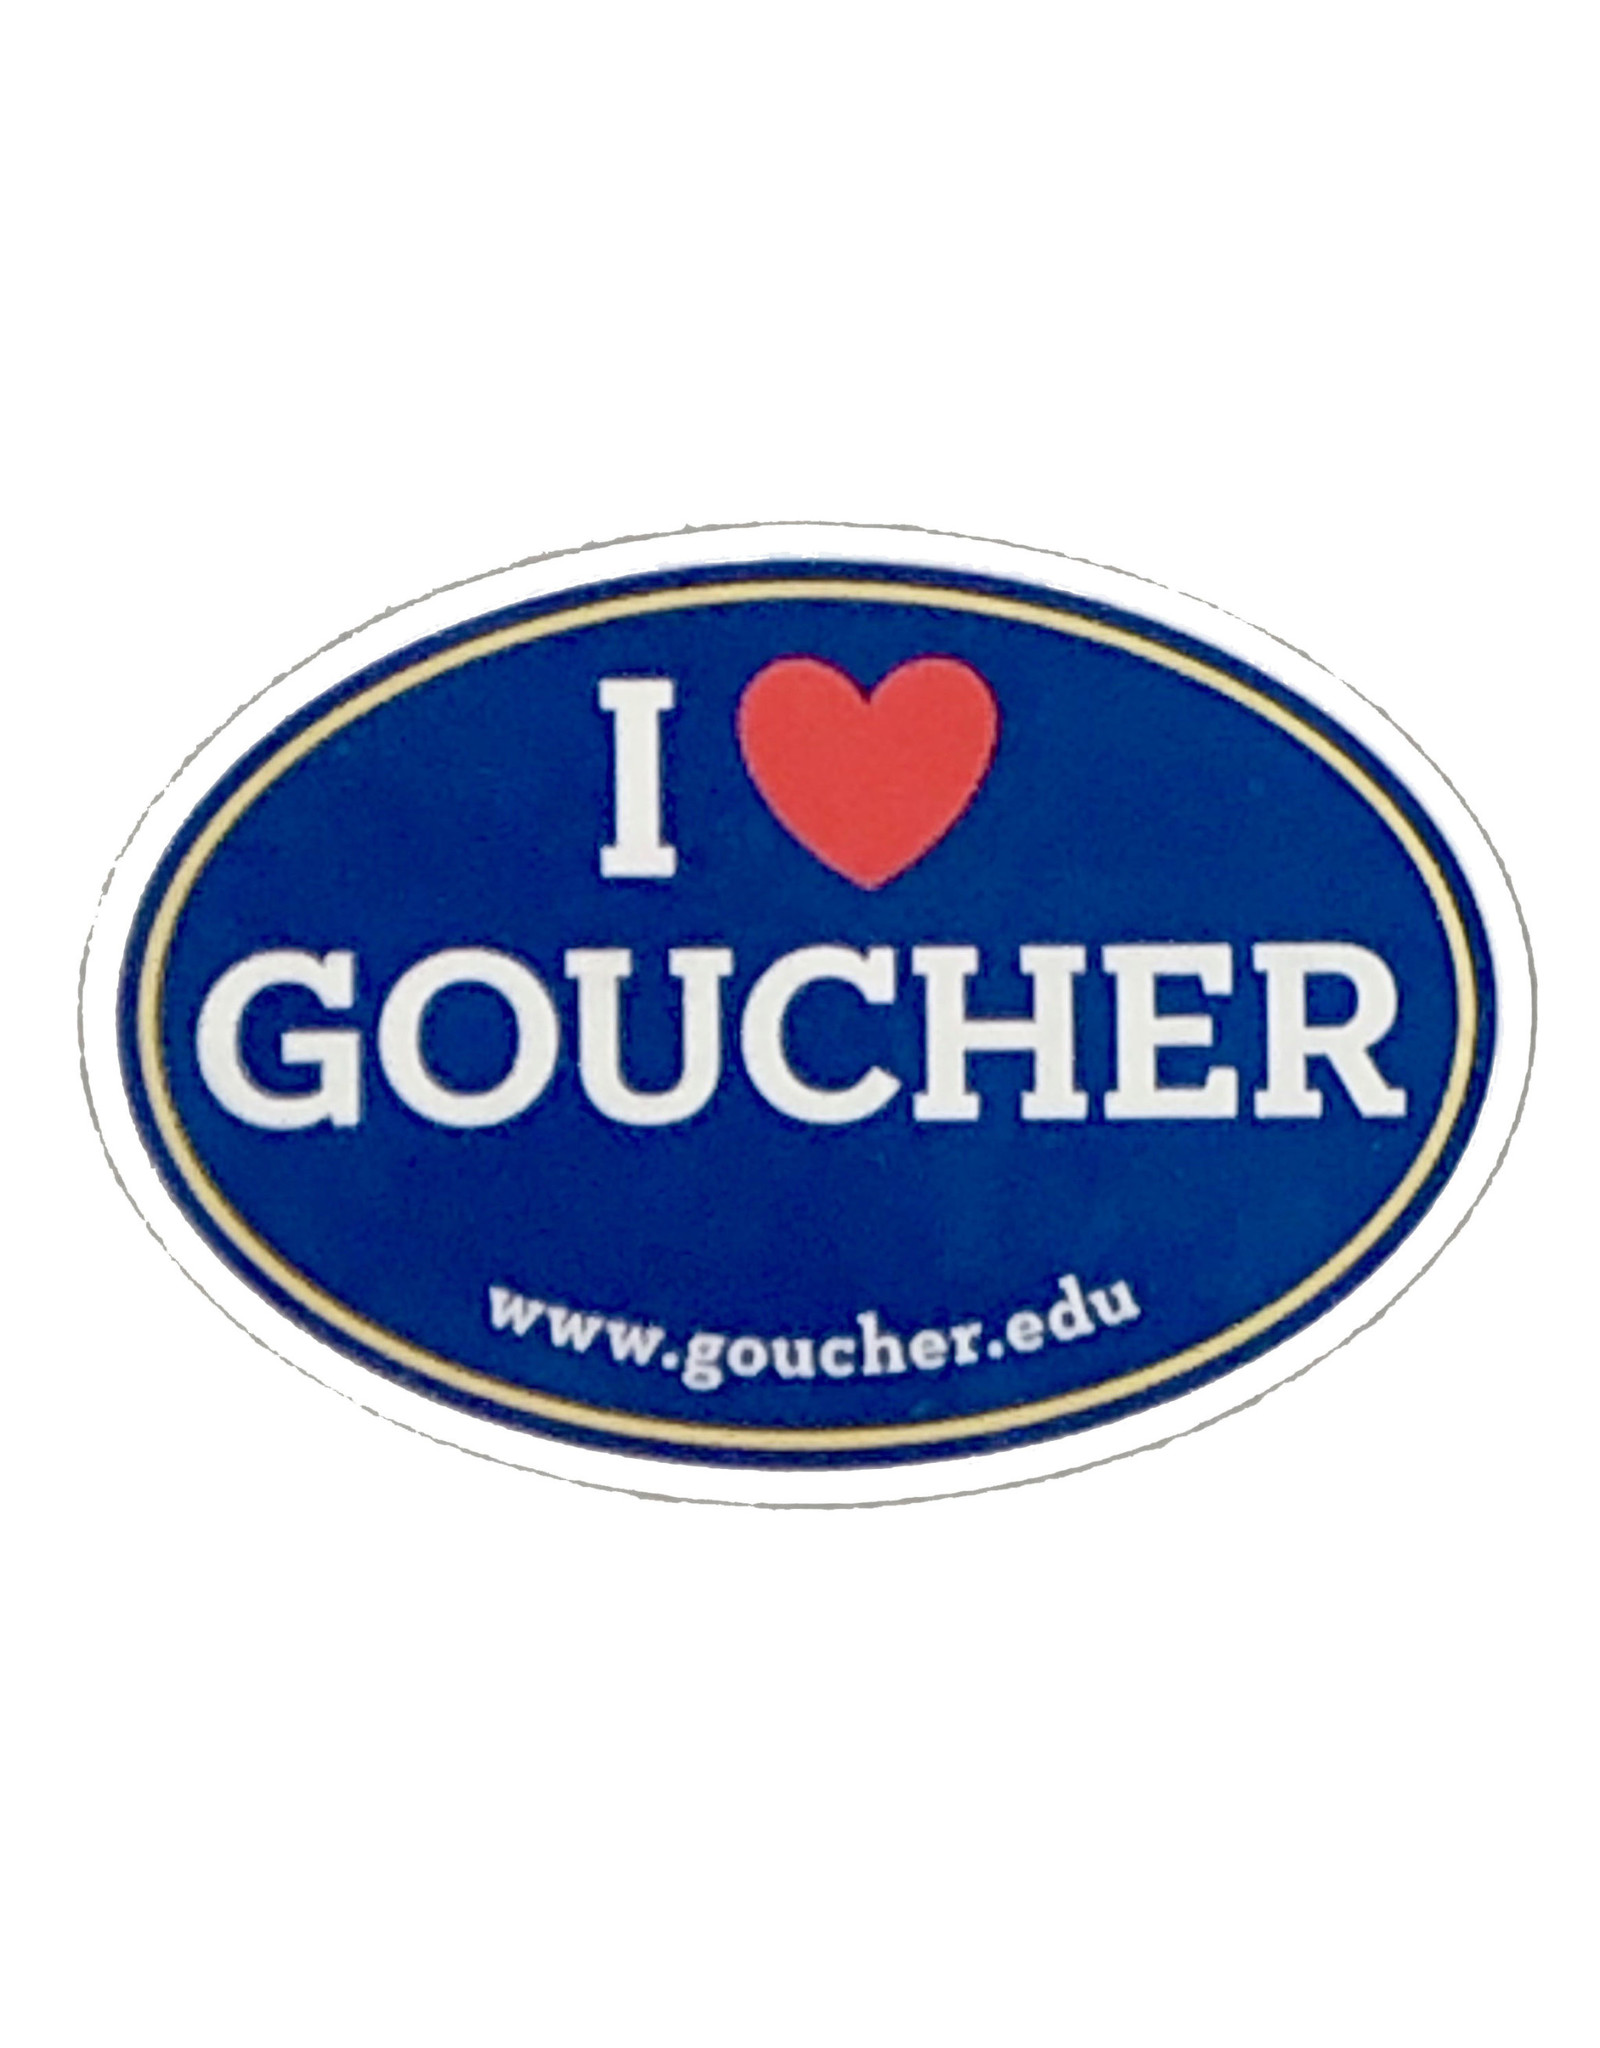 Goucher "I Heart Goucher" Decal - Inside Application